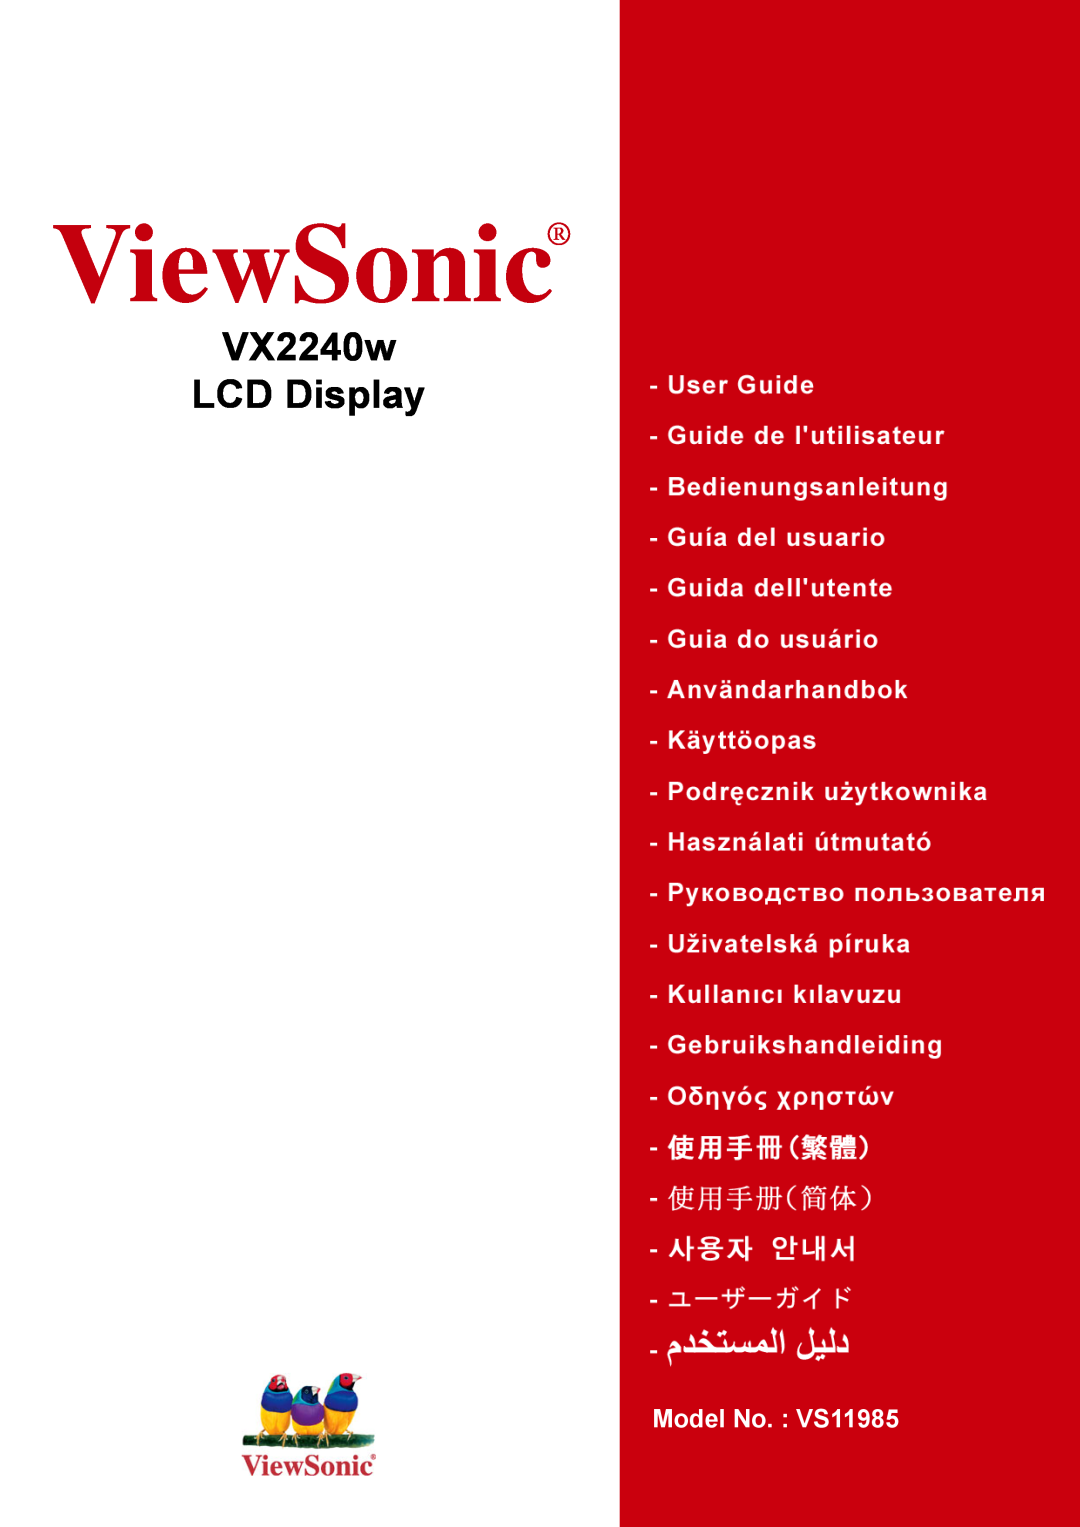 ViewSonic manual ViewSonic, VX2240w LCD Display, Model No. VS11985 